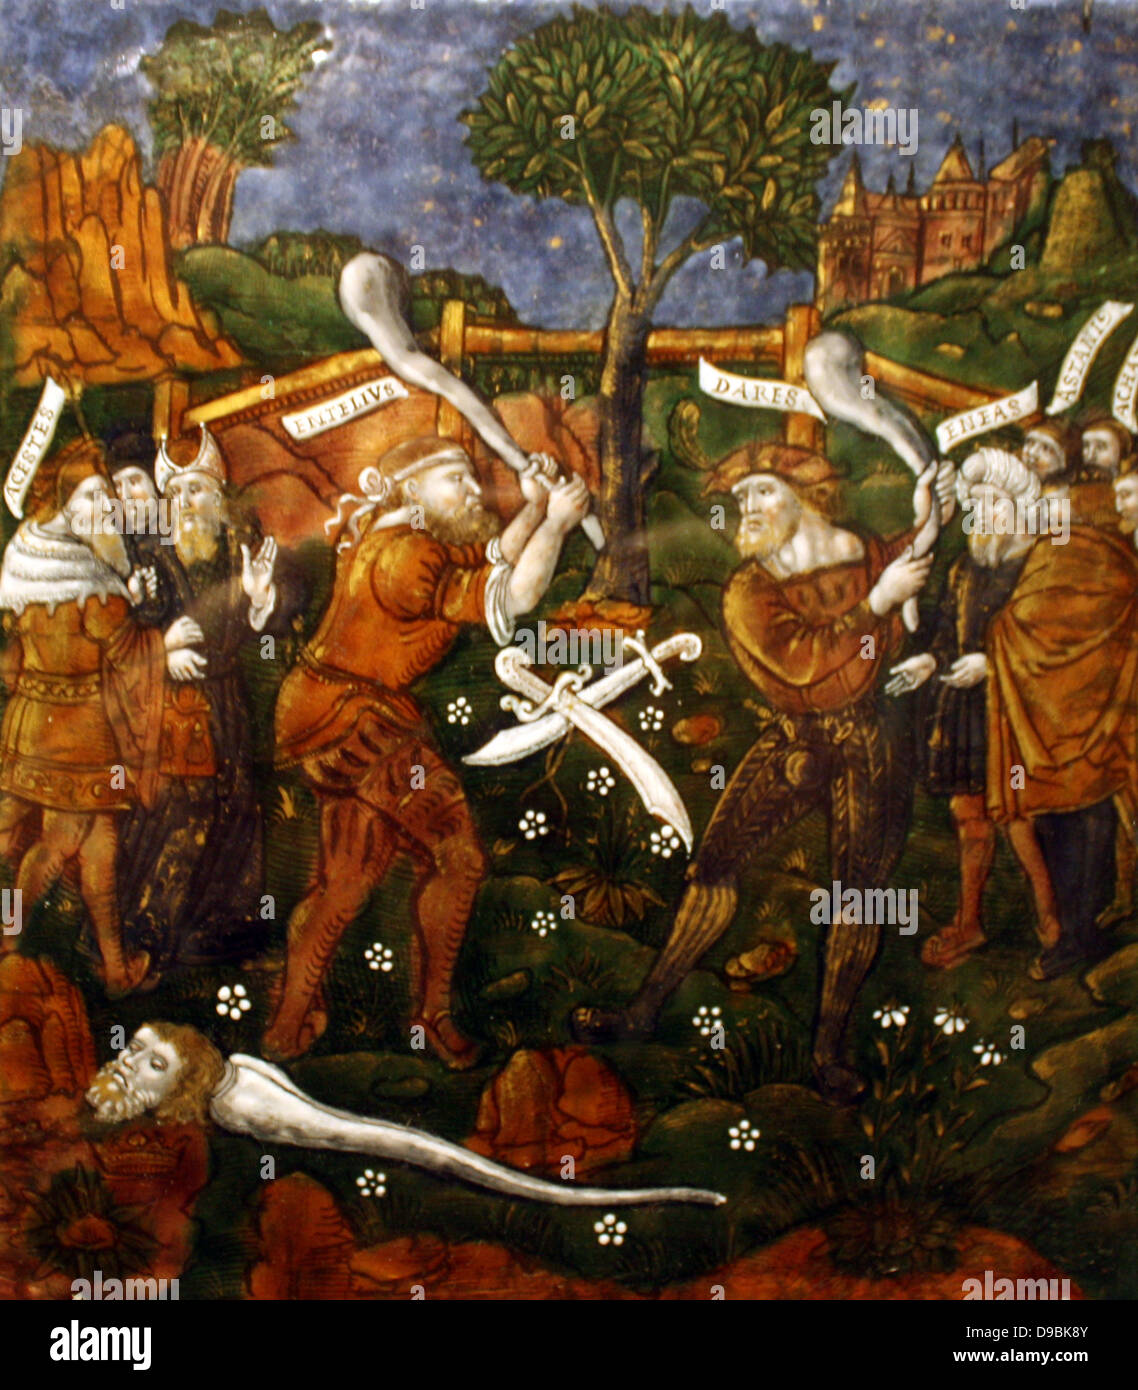 La placca: Turnus travolti dalla Trojan, attraversa il fiume per tornare ai suoi compagni. Eneide, Libro IX, Limoges, circa 1533-35. Foto Stock